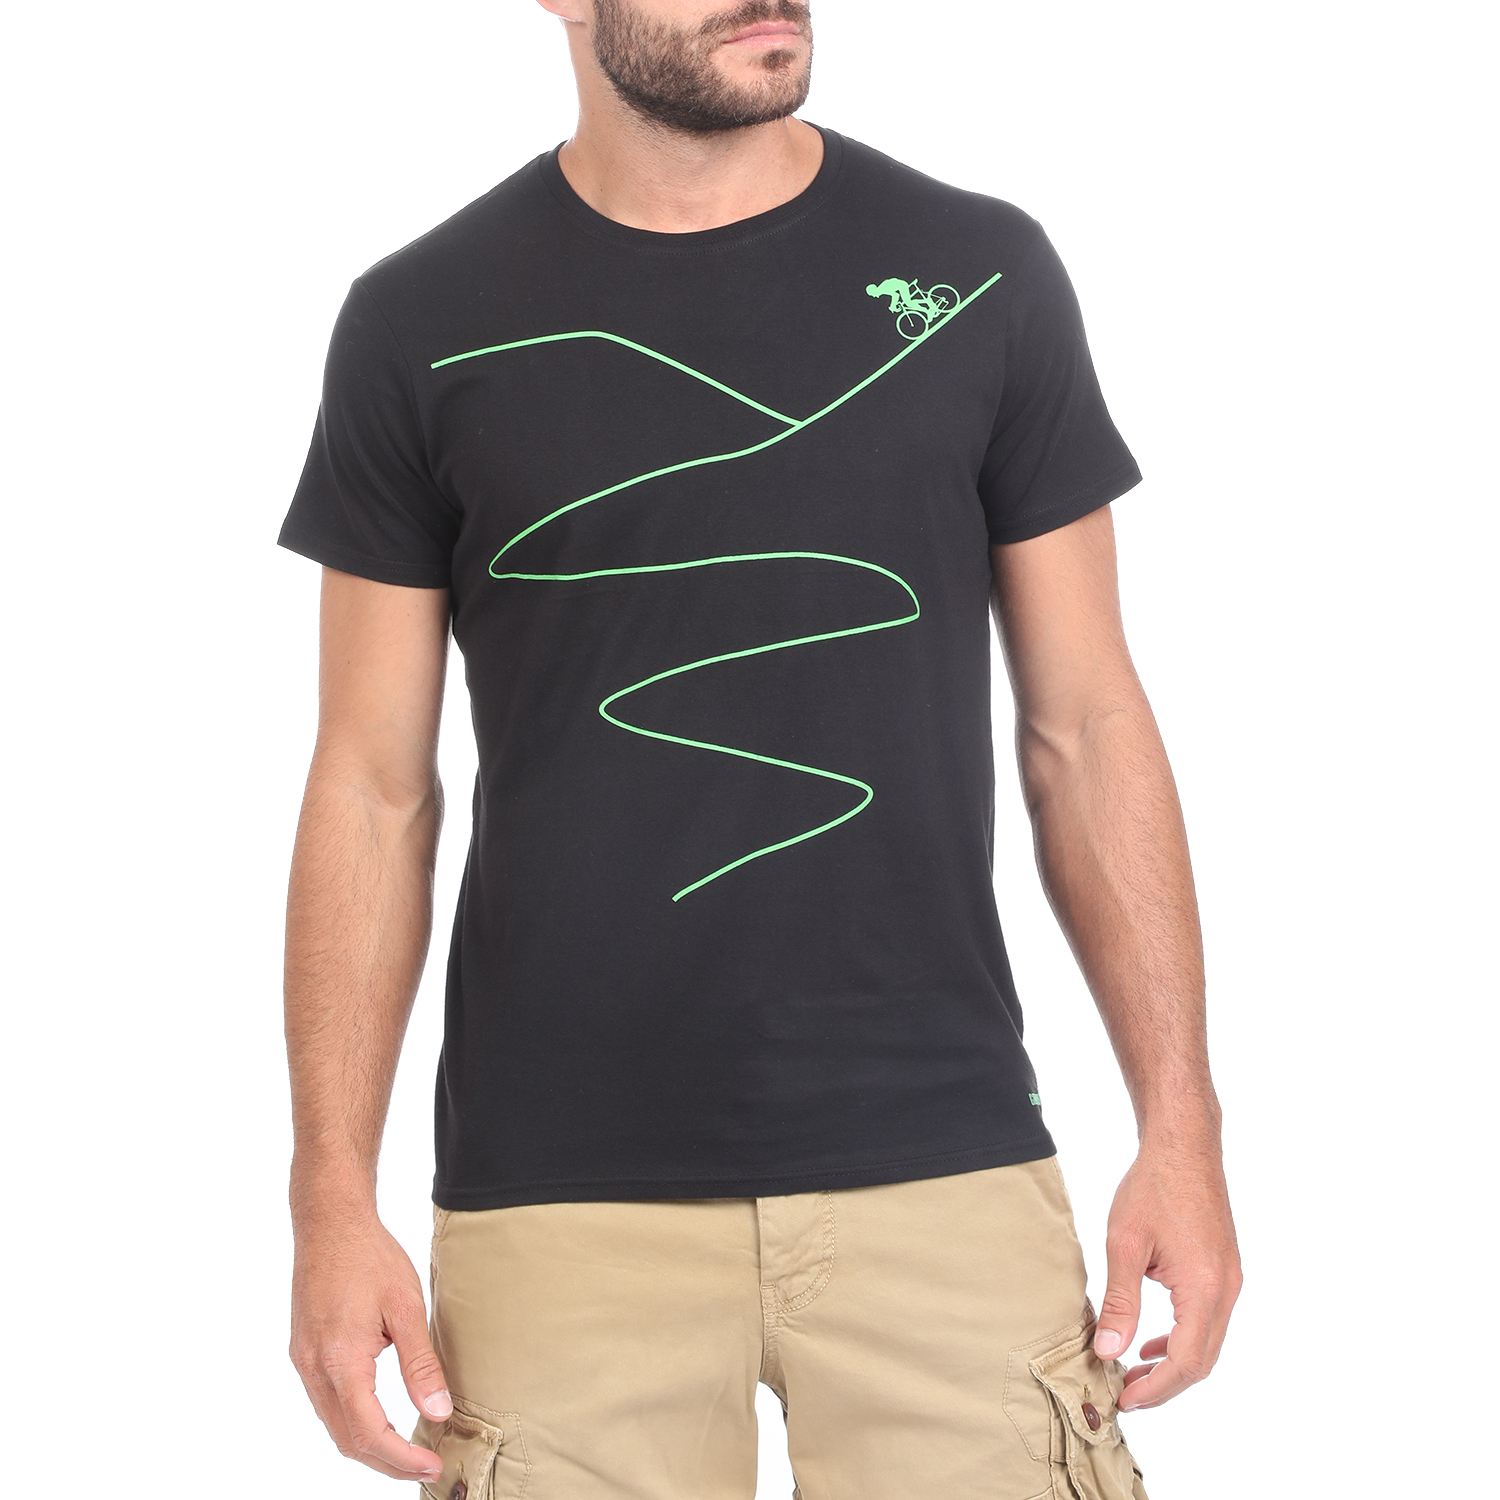 Ανδρικά/Ρούχα/Μπλούζες/Κοντομάνικες GREENWOOD - Ανδρική κοντομάνικη μπλούζα GREENWOOD ROADWAY μαύρη